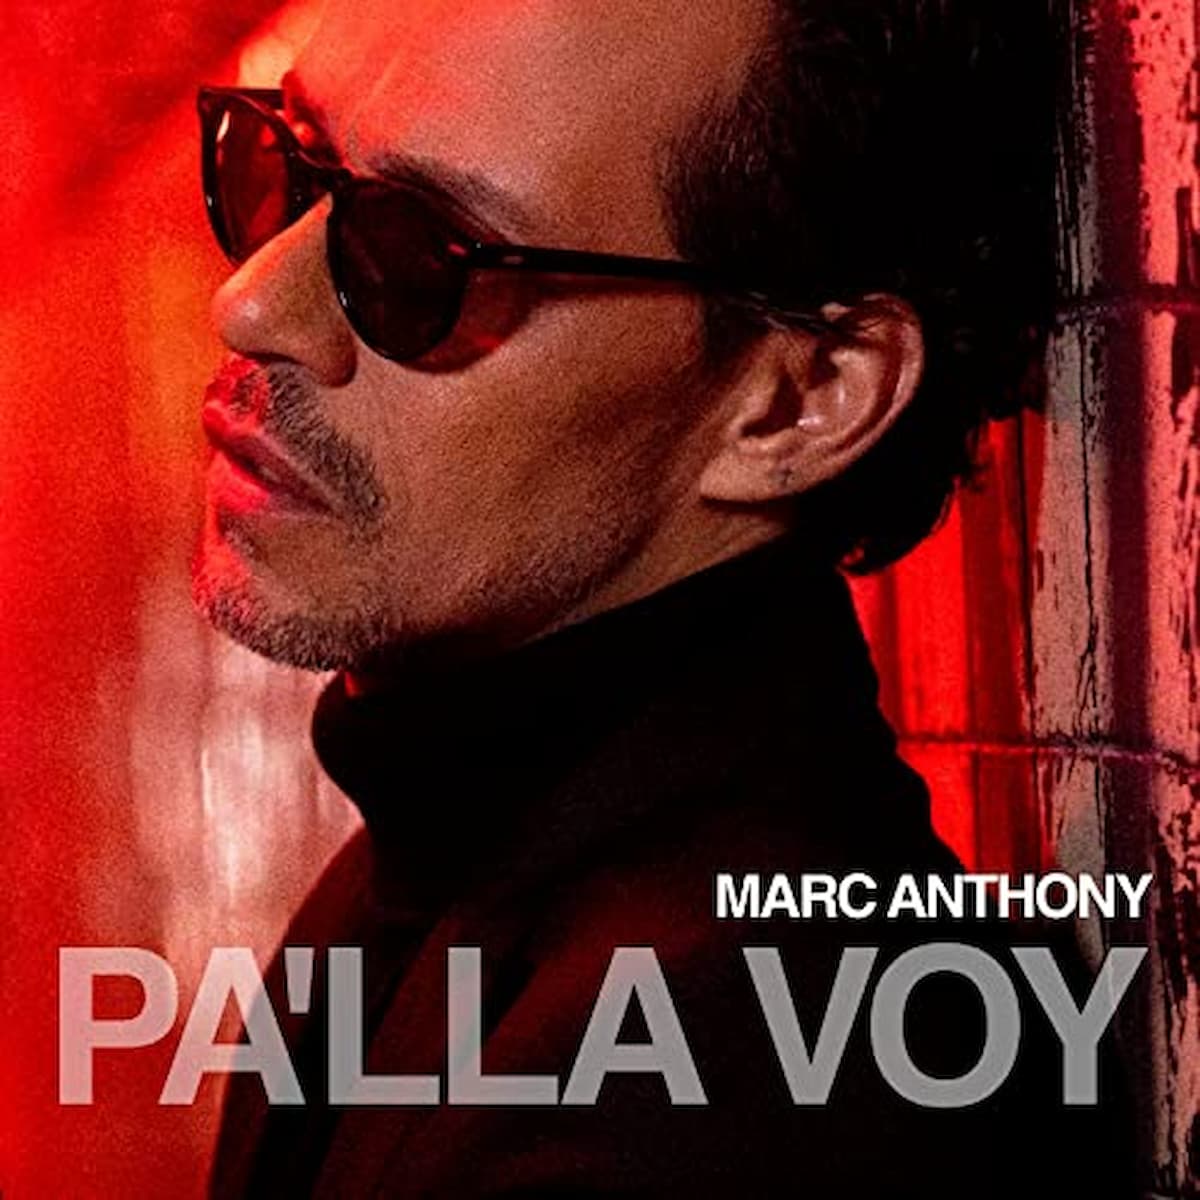 Marc Anthony mit neuem Salsa-Album "Pa'lla Voy" 2022